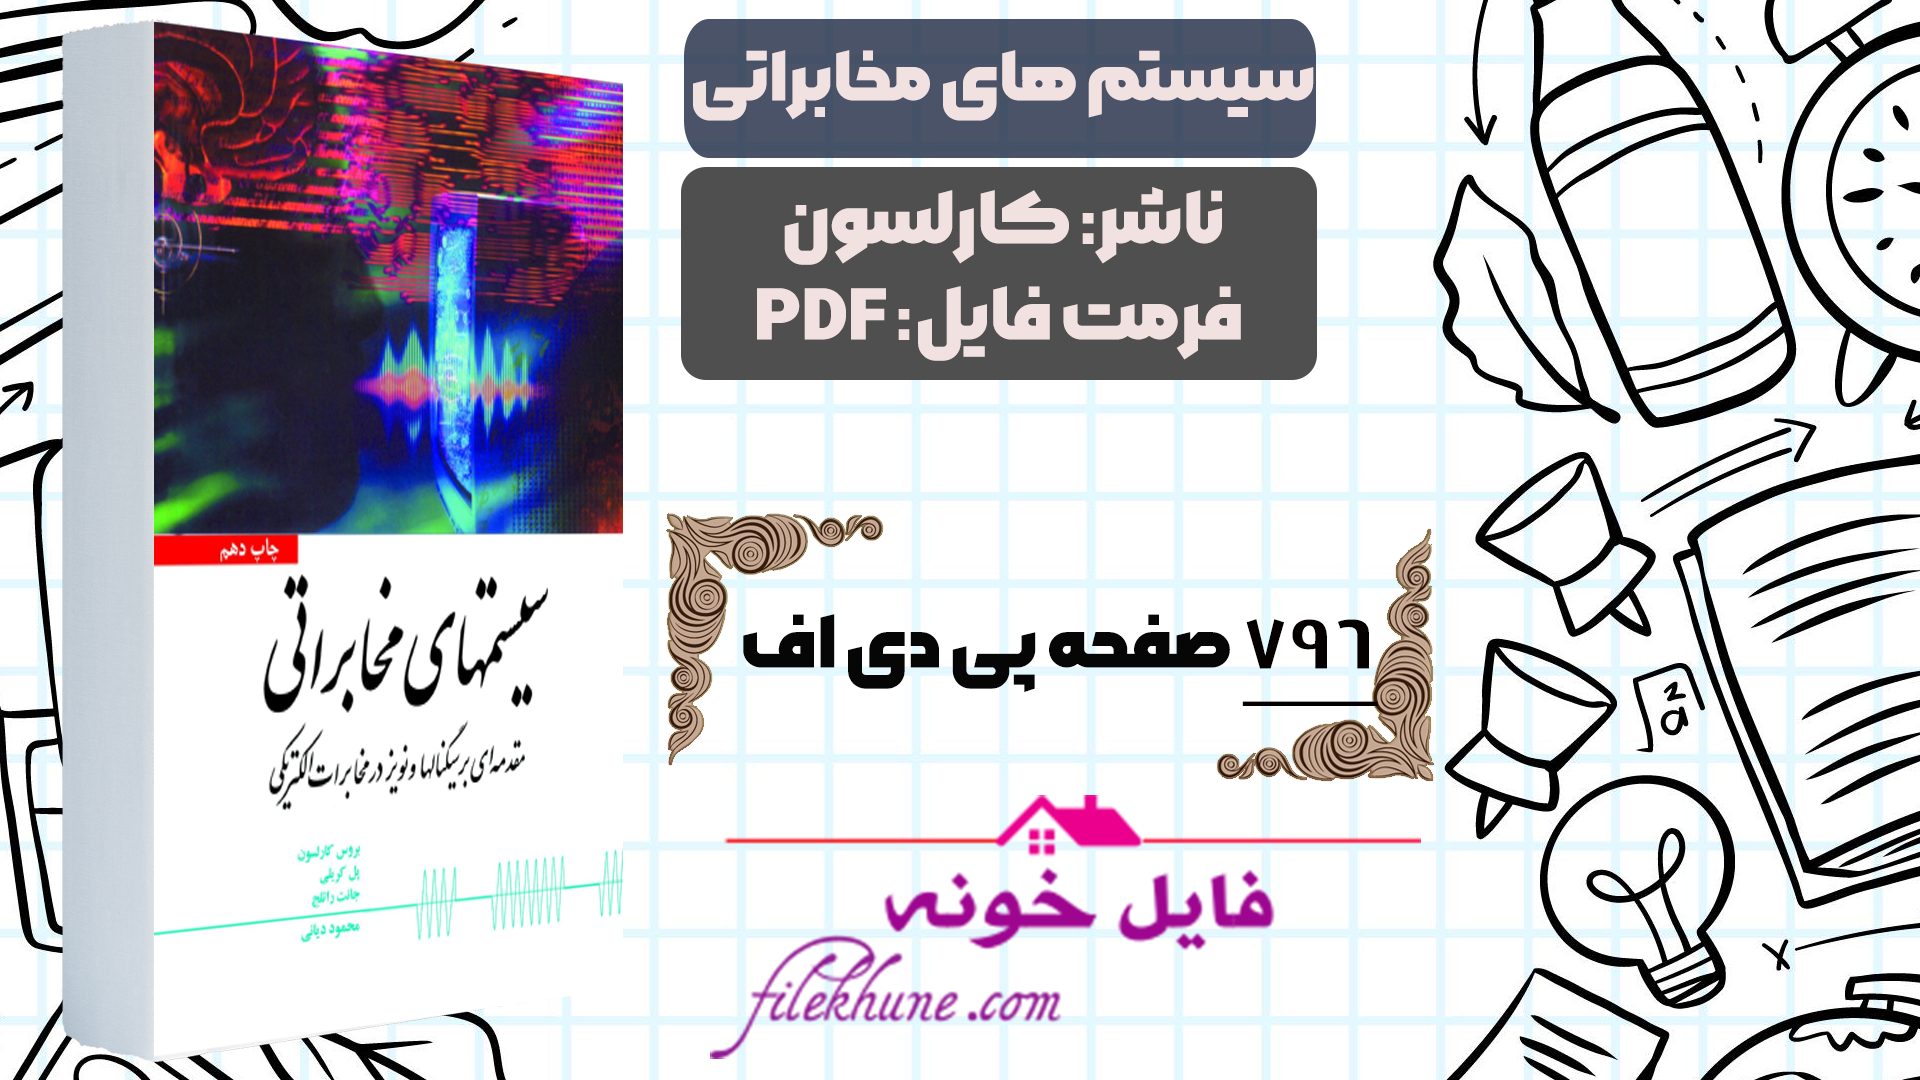 دانلود کتاب سیستم های مخابراتی کارلسون ترجمه محمود دیانی PDF - فایل خونه